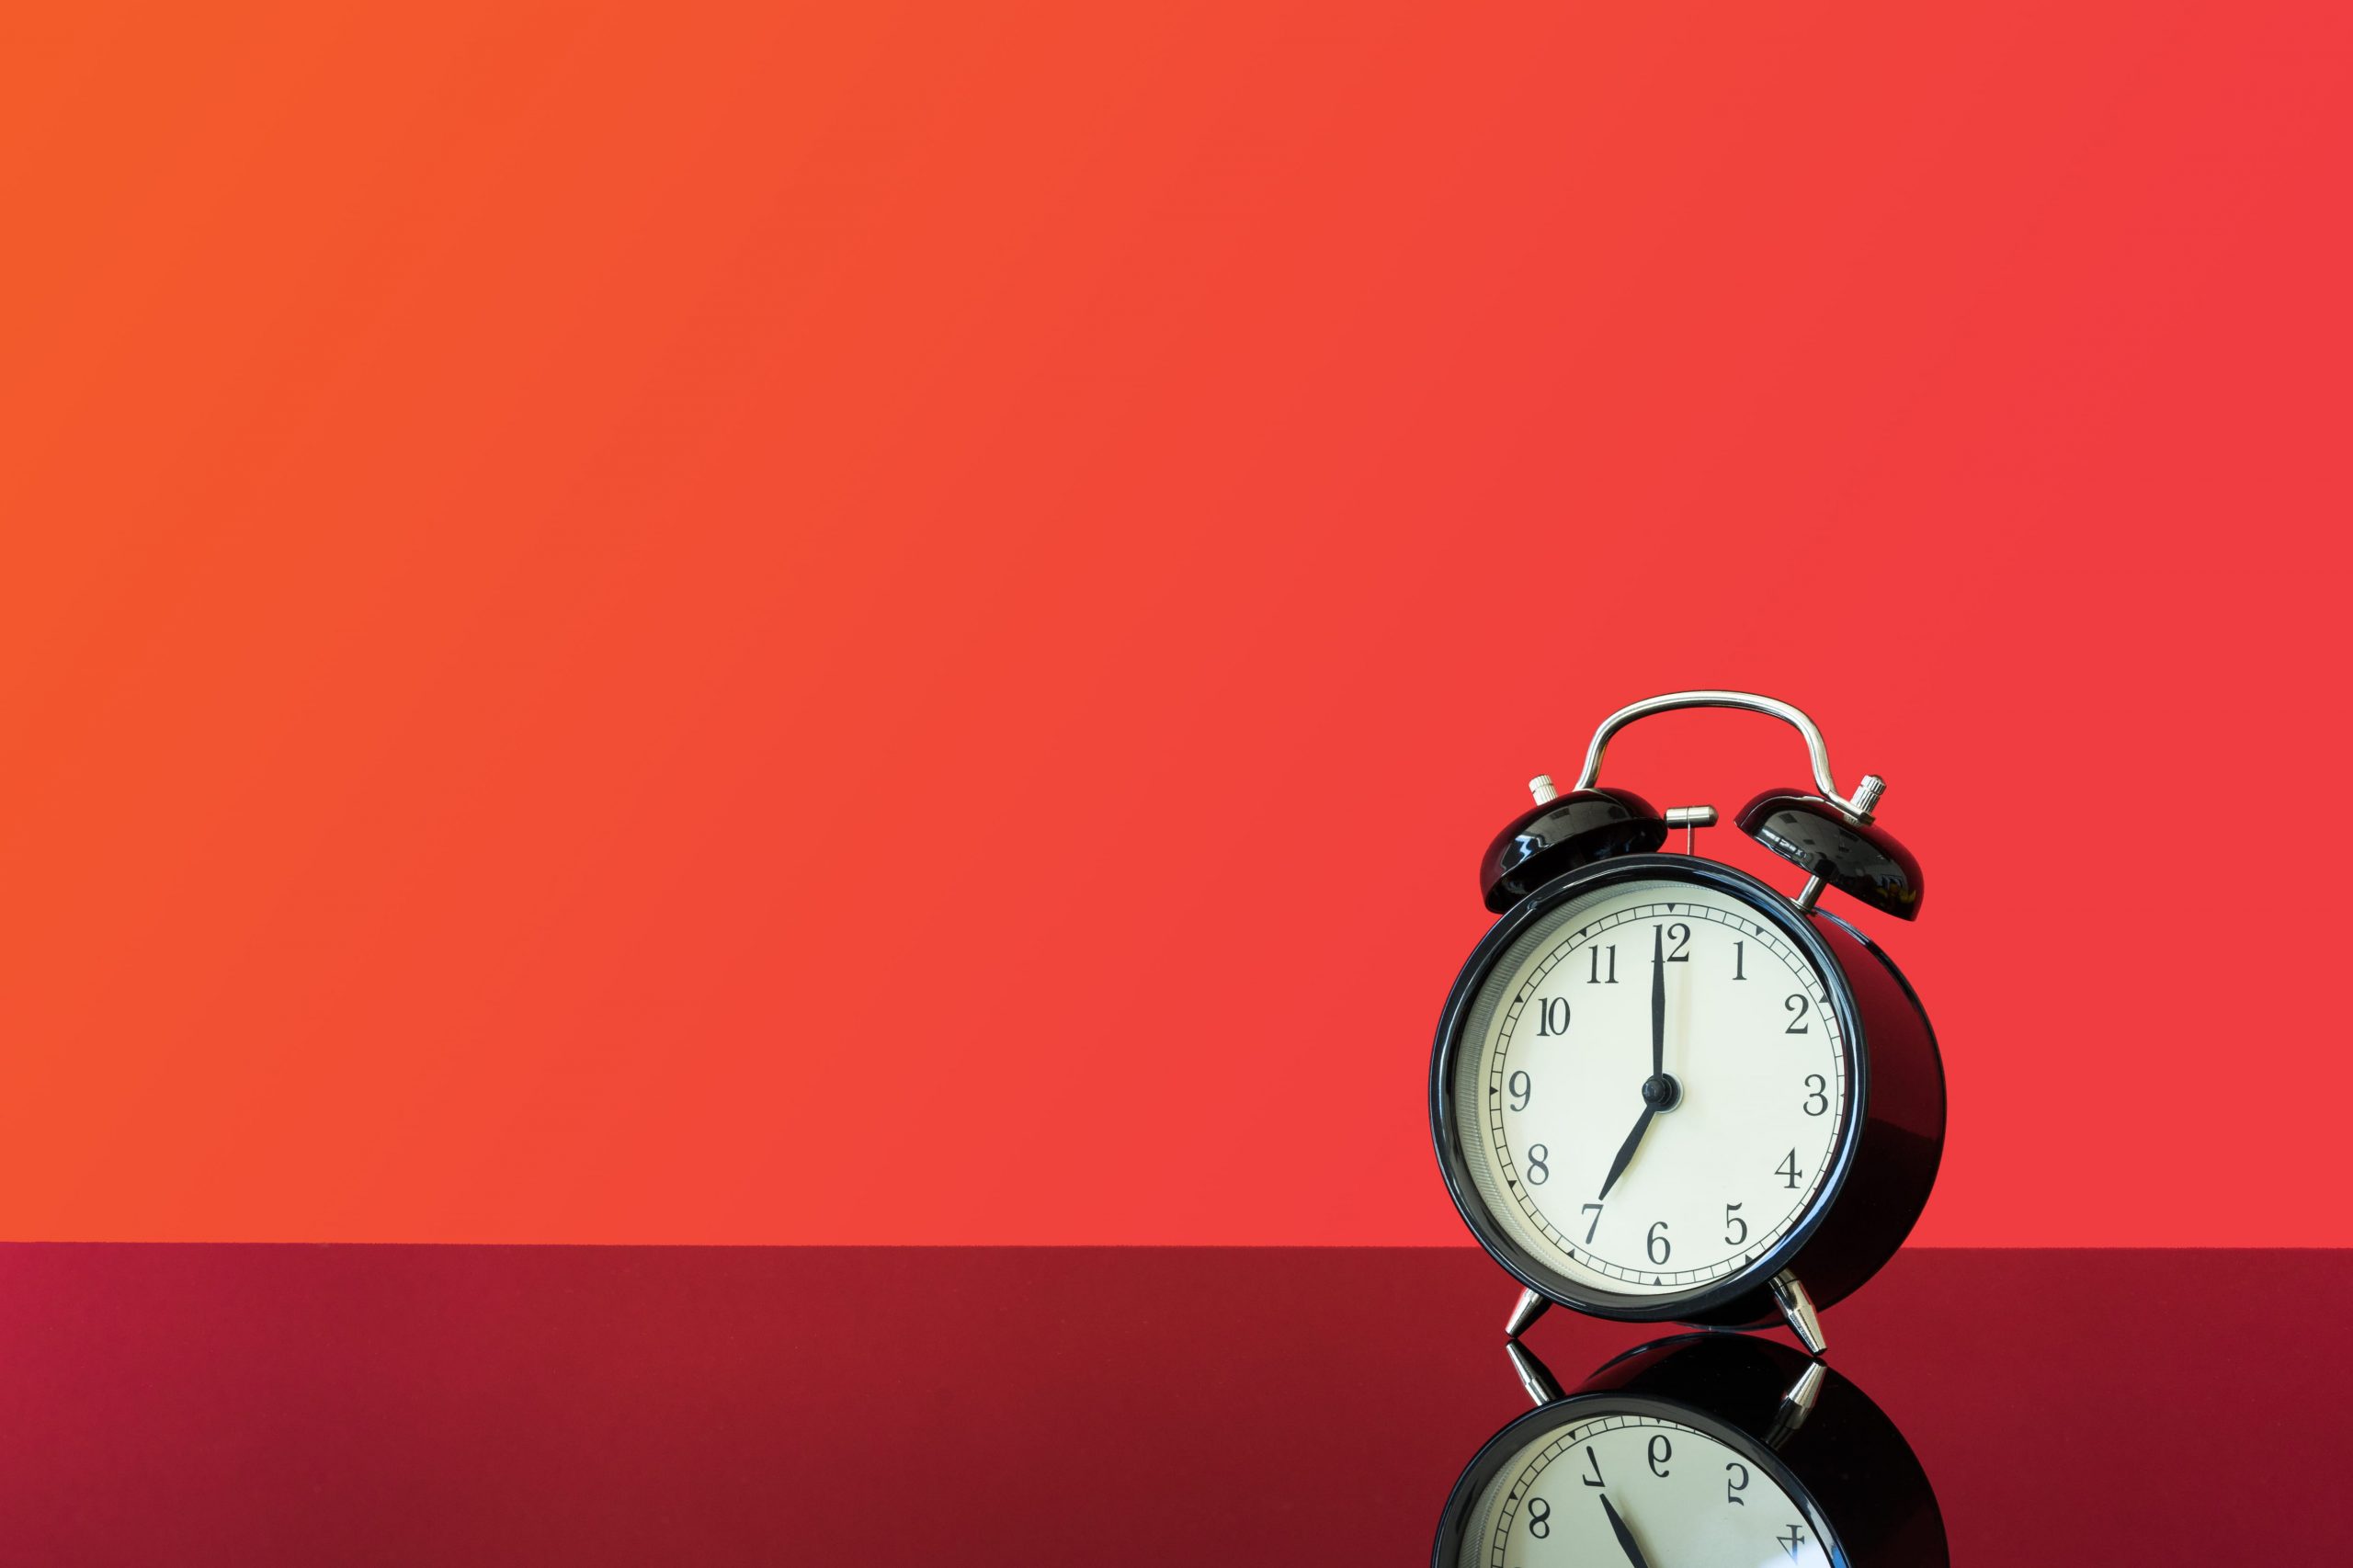 Vintage Alarm Clock, bed time, deadline, deprivation, get up wallpaper